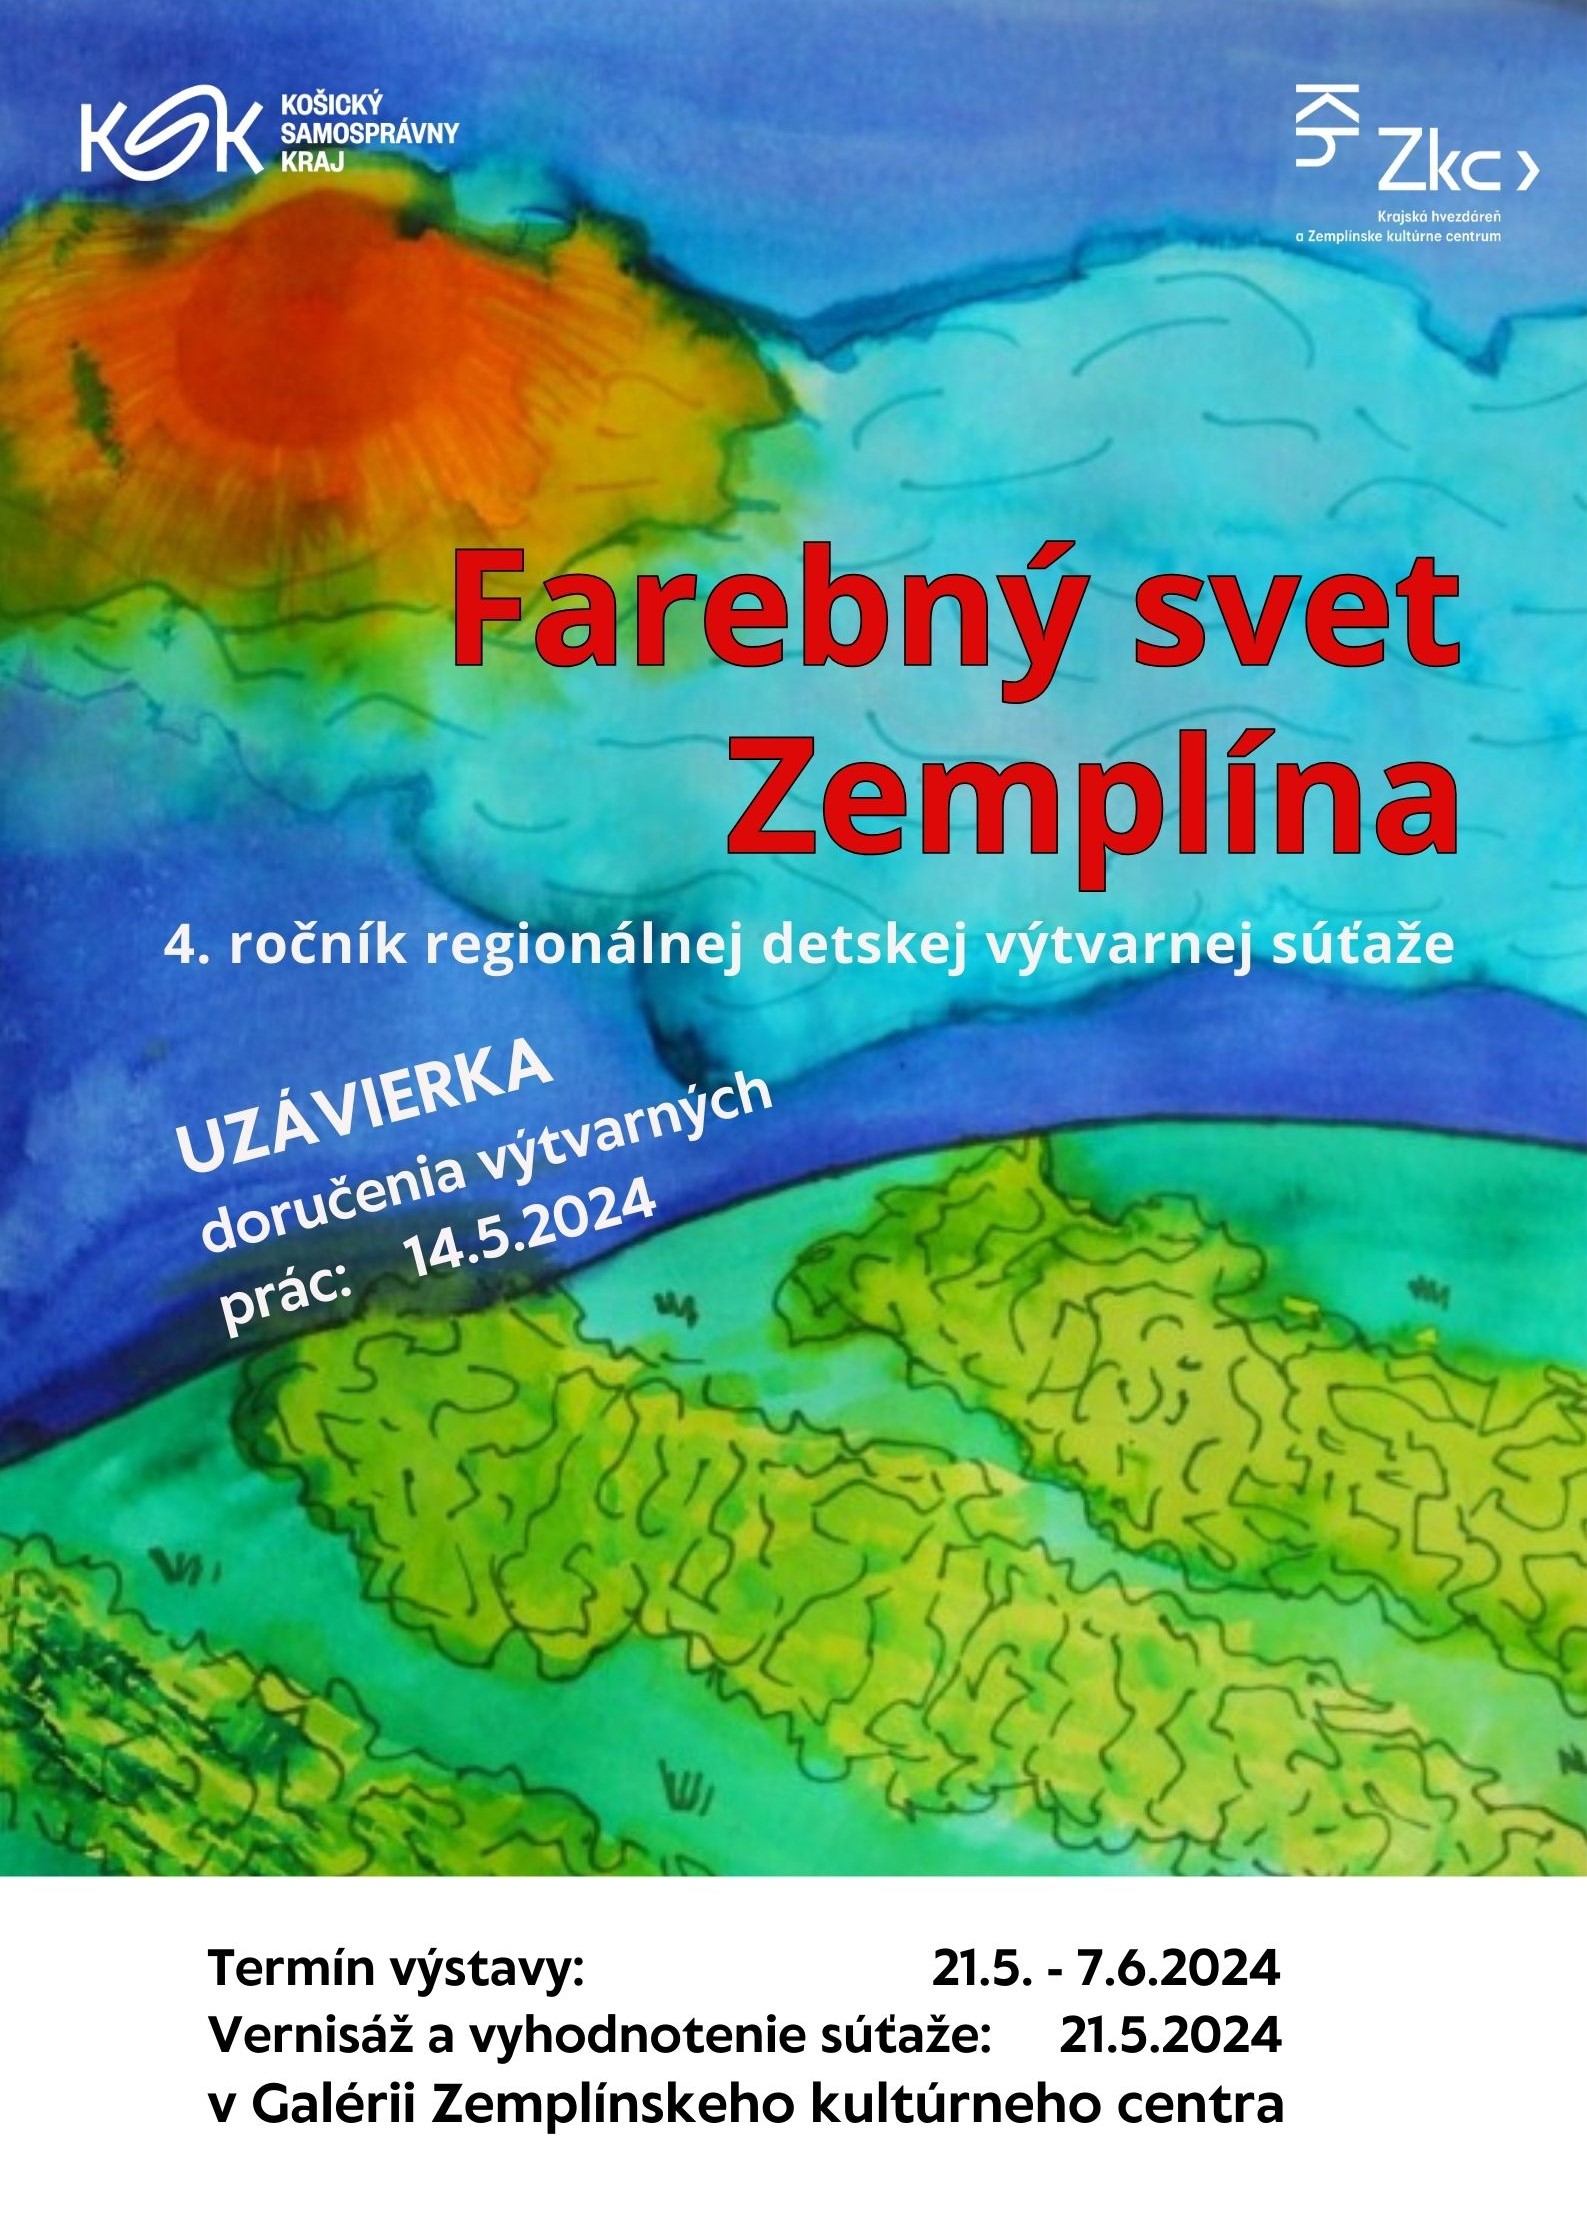 Farebný svet Zemplína (5).jpg